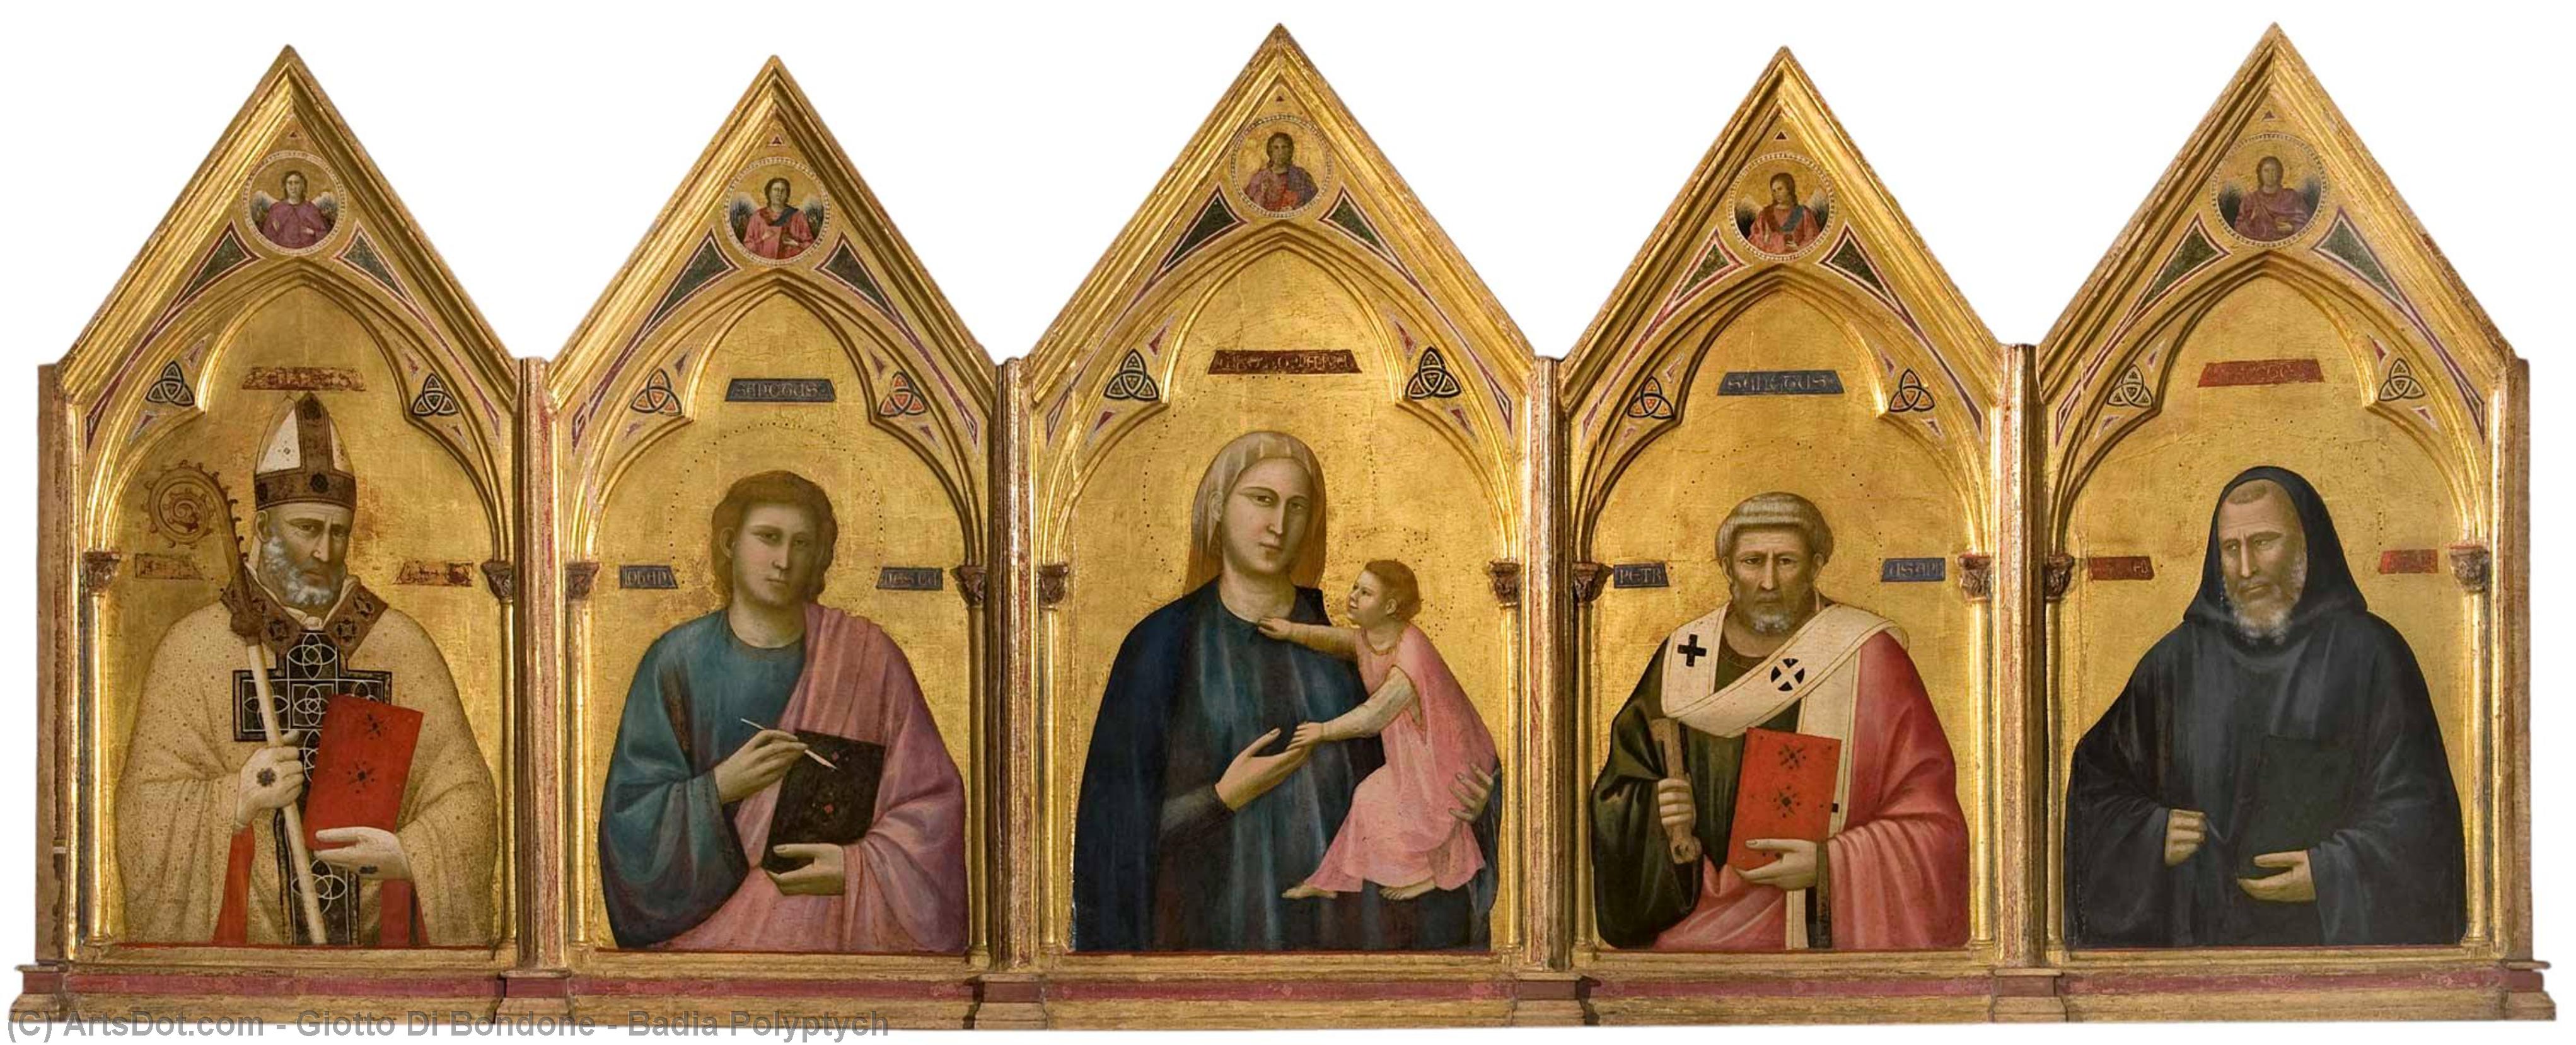 WikiOO.org - Enciklopedija likovnih umjetnosti - Slikarstvo, umjetnička djela Giotto Di Bondone - Badia Polyptych